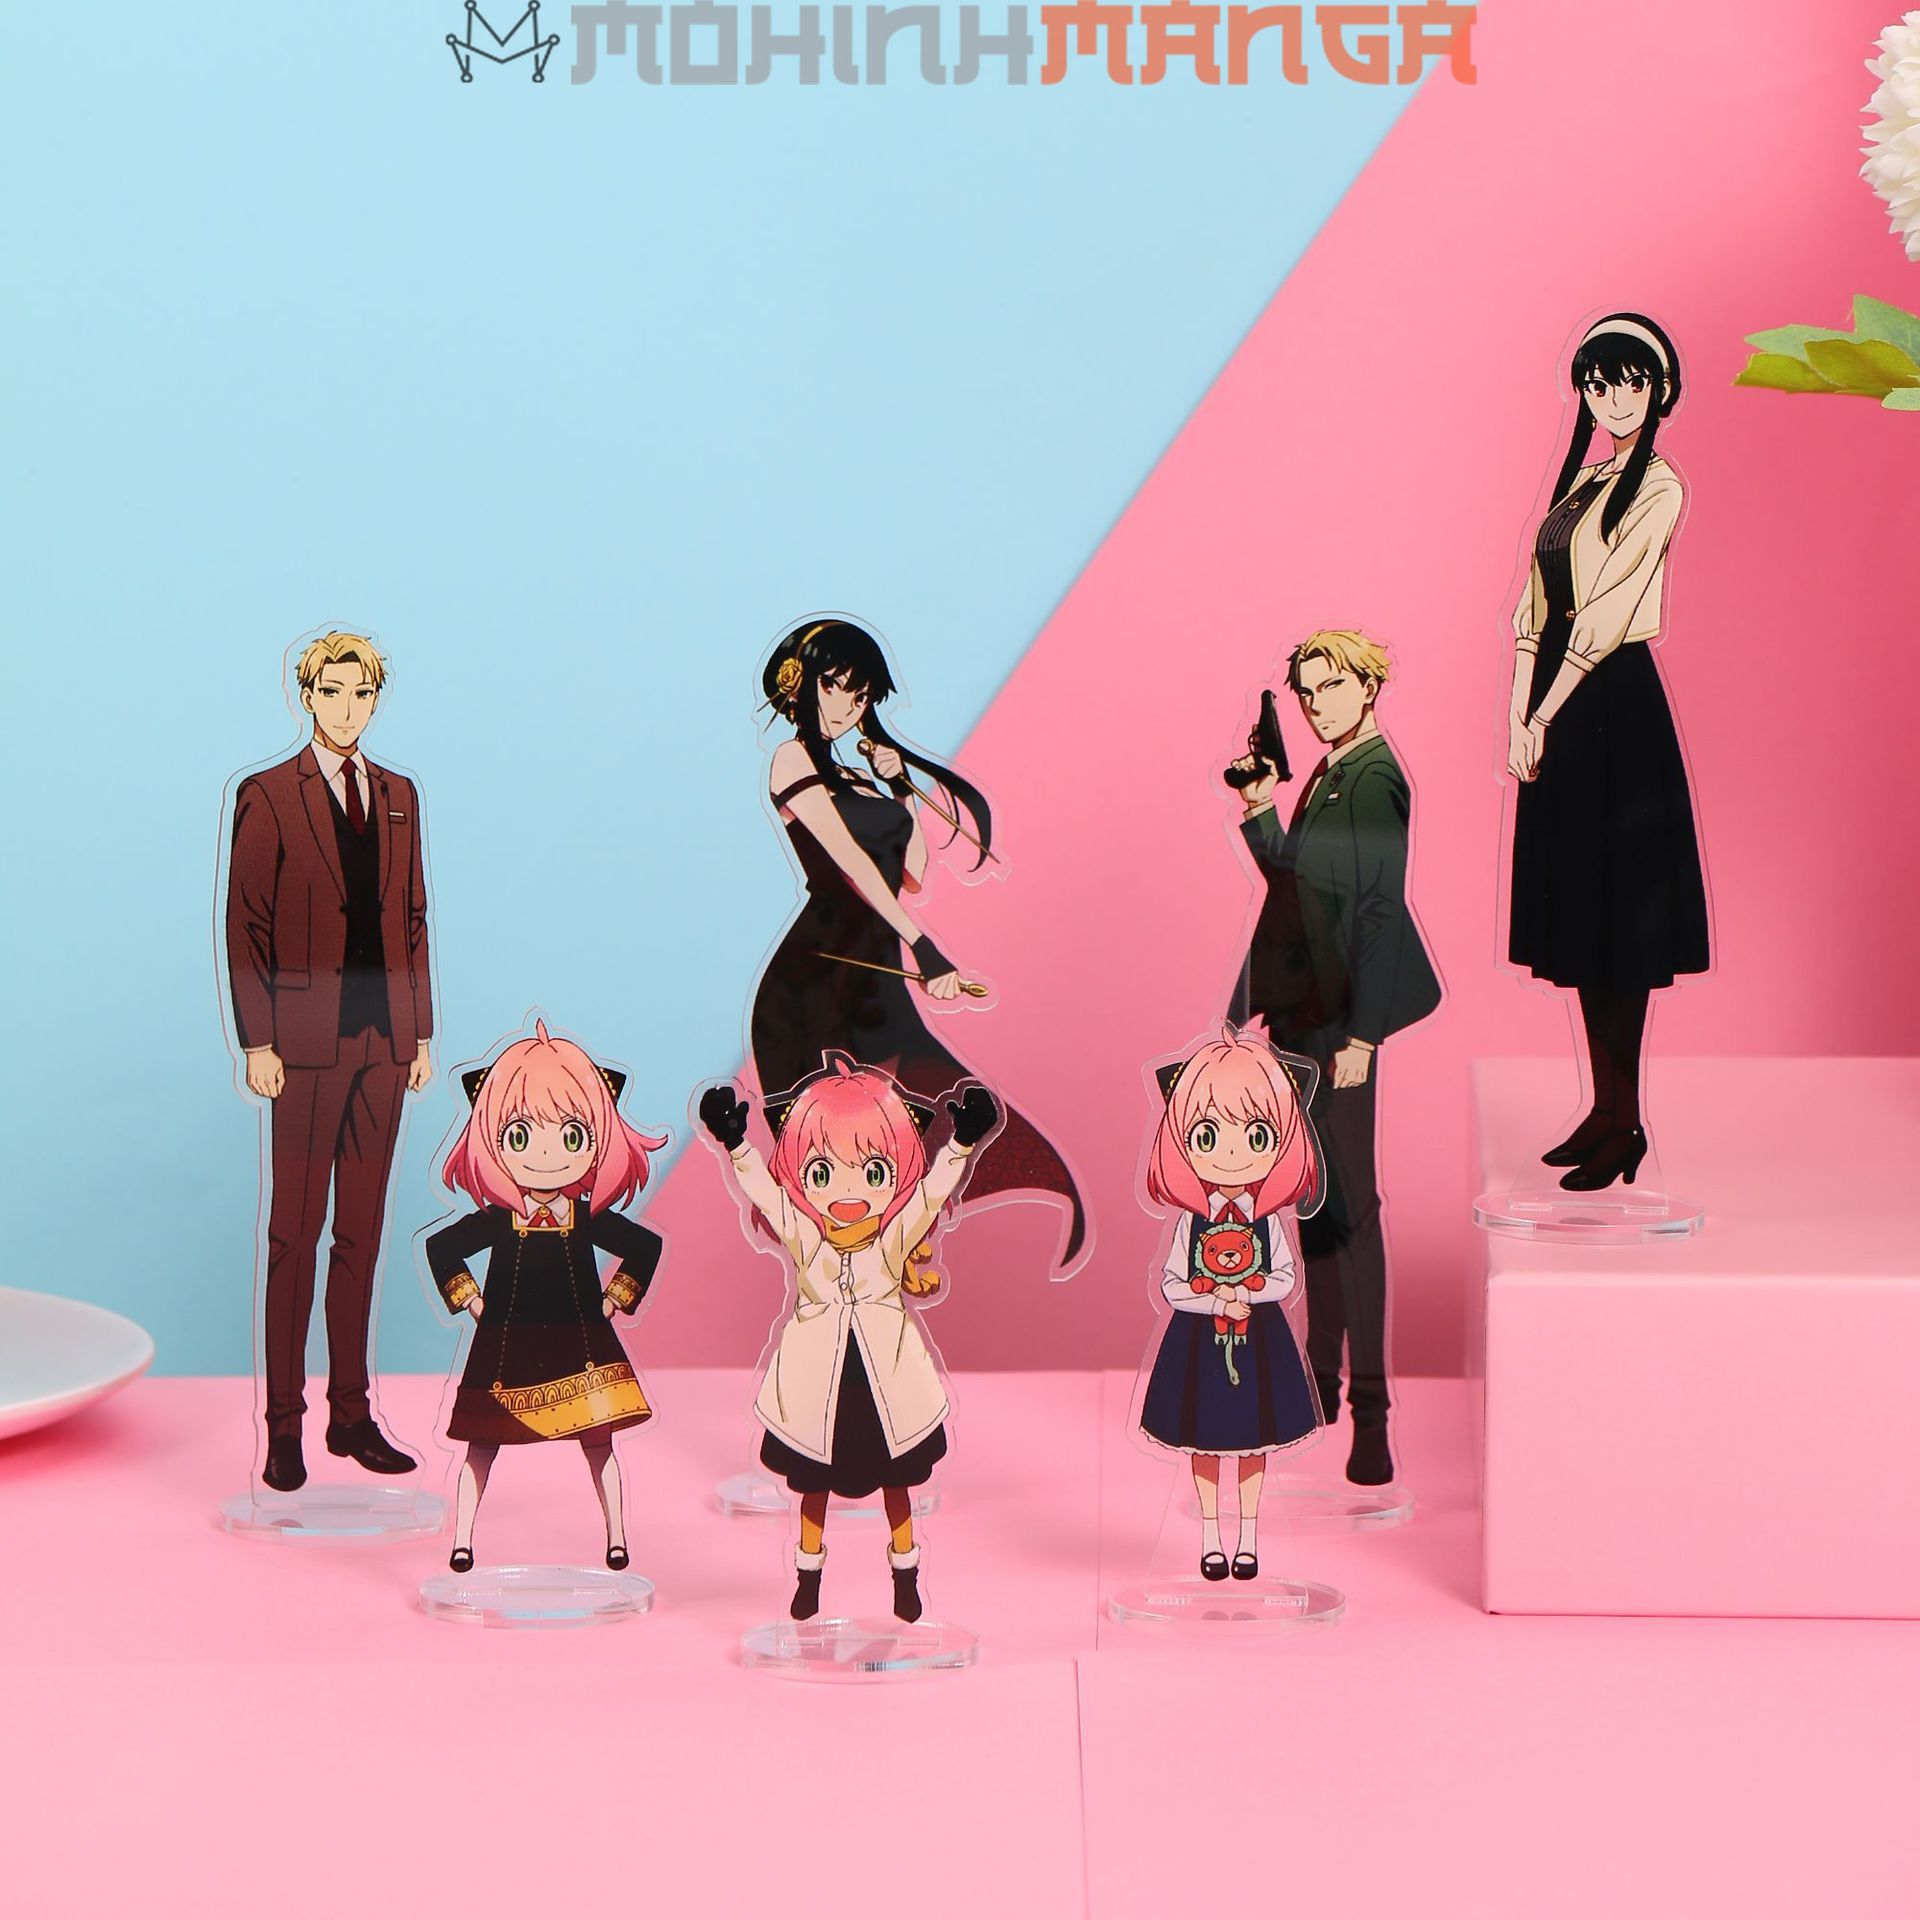 Mua Mô hình giấy Anime Game Chibi Anya ver 2  Spy x Family  In mực thường   Giấy ford A4 125gsm tại Kit168